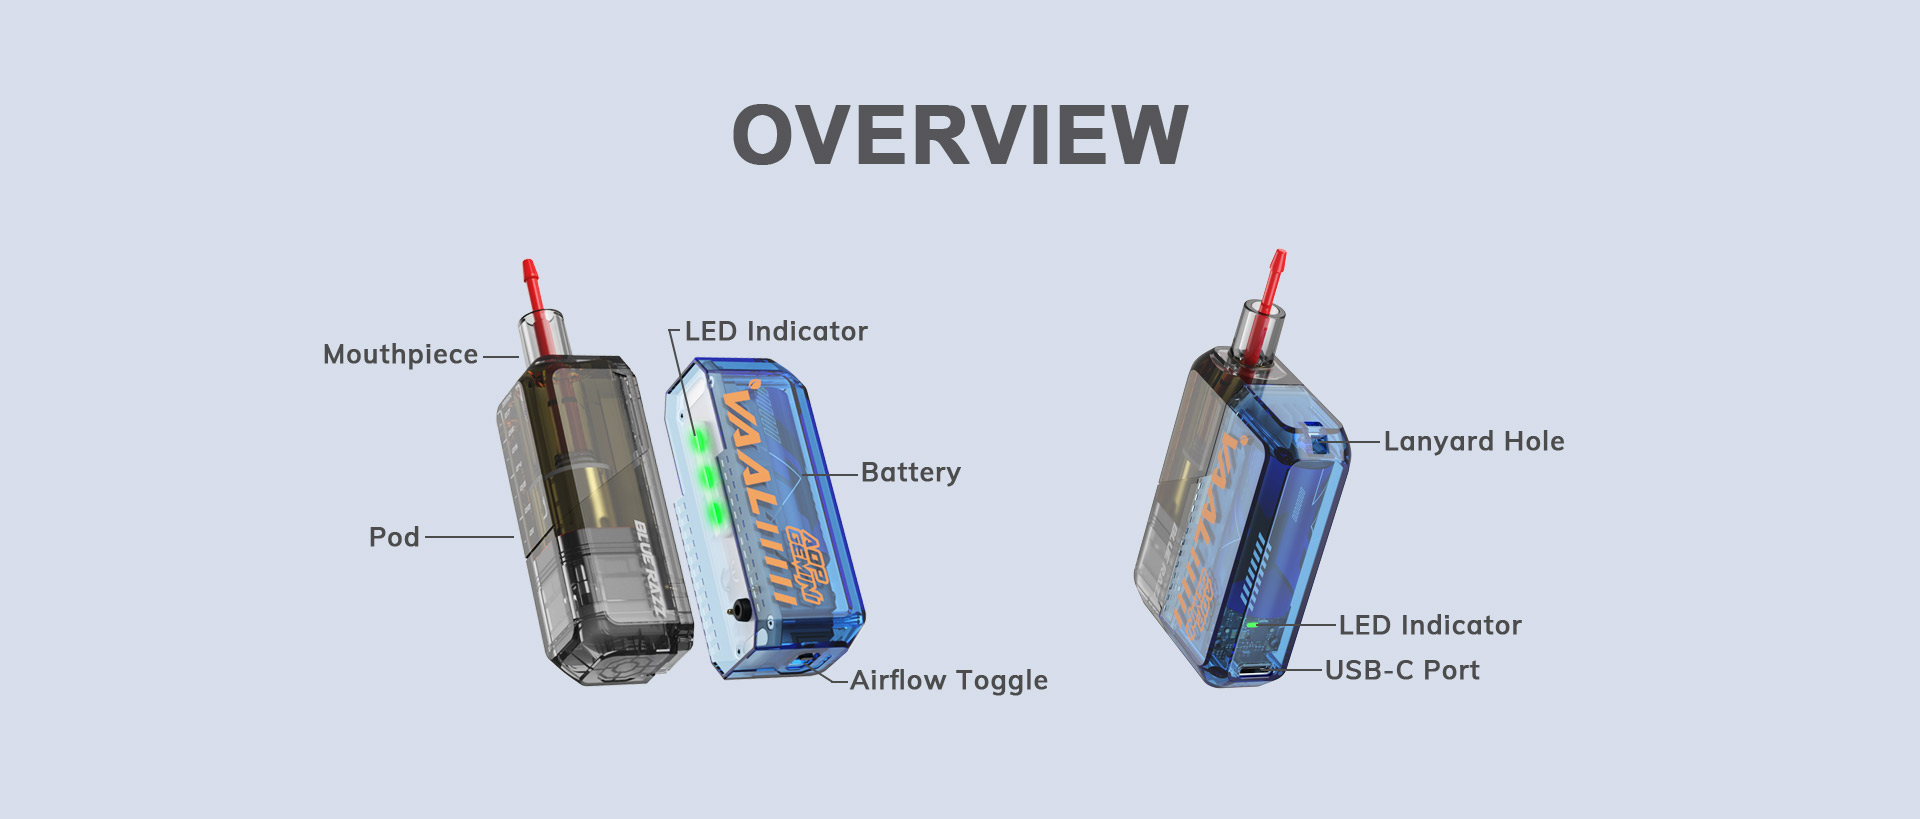 VAAL Gemini vape kit structure: POD, Battery, Mouthpiece, USB-C Port, LED Indicator, Airflow Toggle, Lanyard Hole.